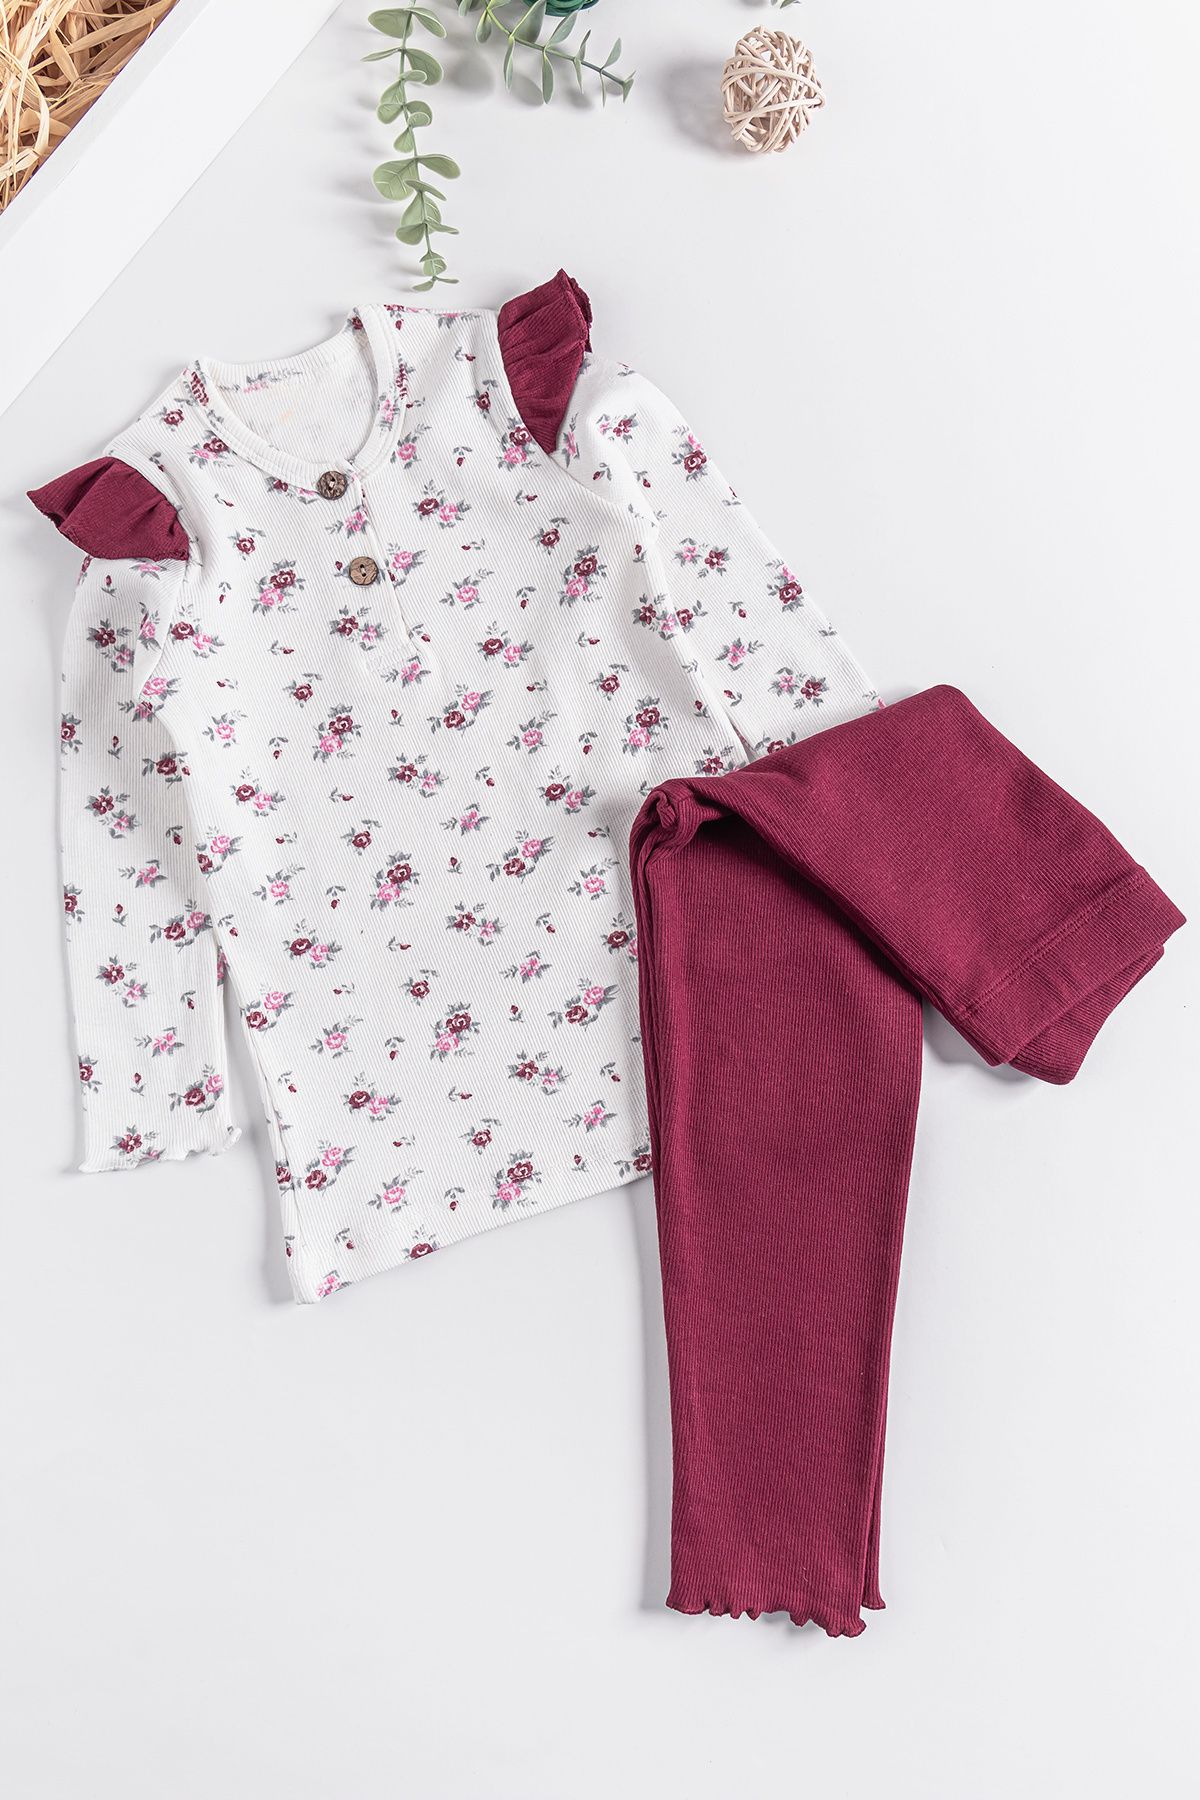 Babymod Çiçek Desenli Fırfırlı Kız Çocuk Pijama Takımı